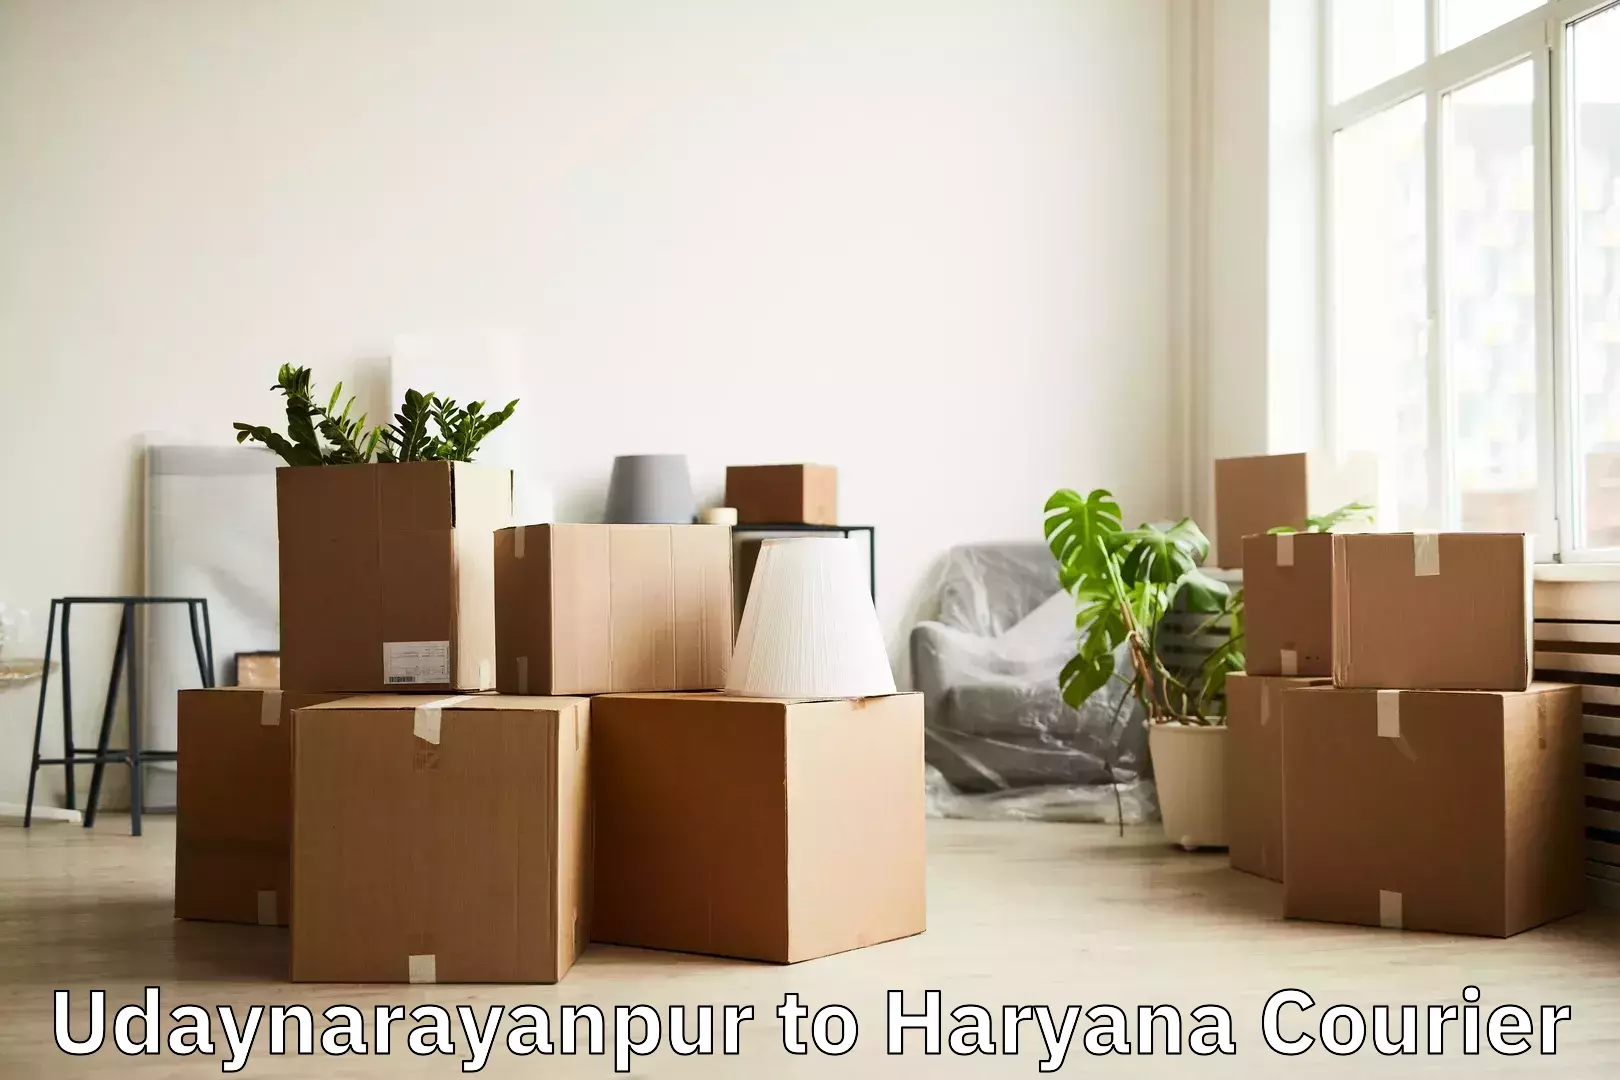 Baggage transport scheduler Udaynarayanpur to Haryana